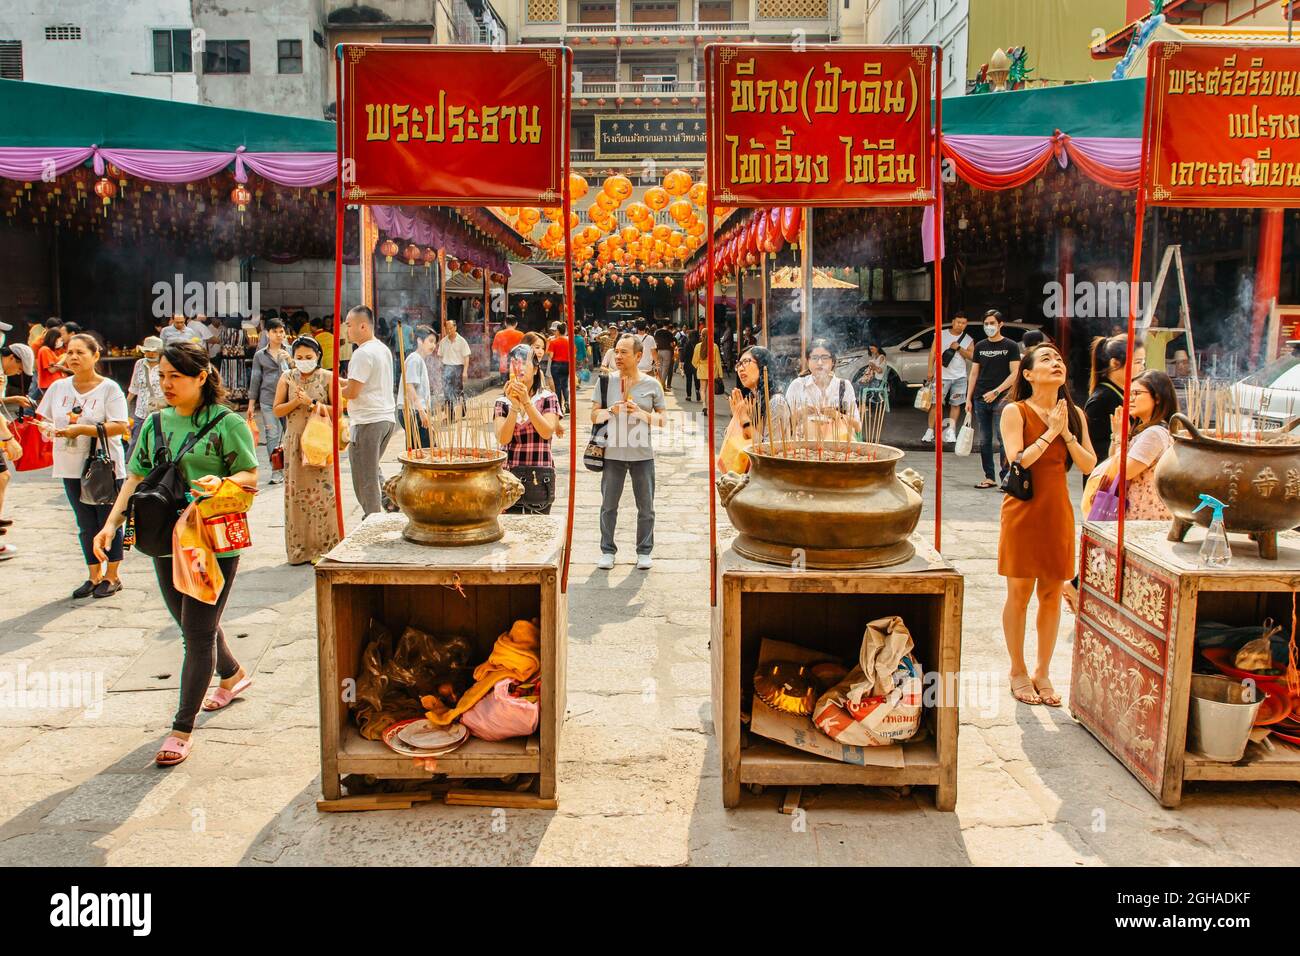 Bangkok, Thailandia - Gennaio 17,2020.Asian donne e uomini che vengono al tempio buddista per la celebrazione, incenso ardente bastoni, pregare, meditating.Religious Foto Stock